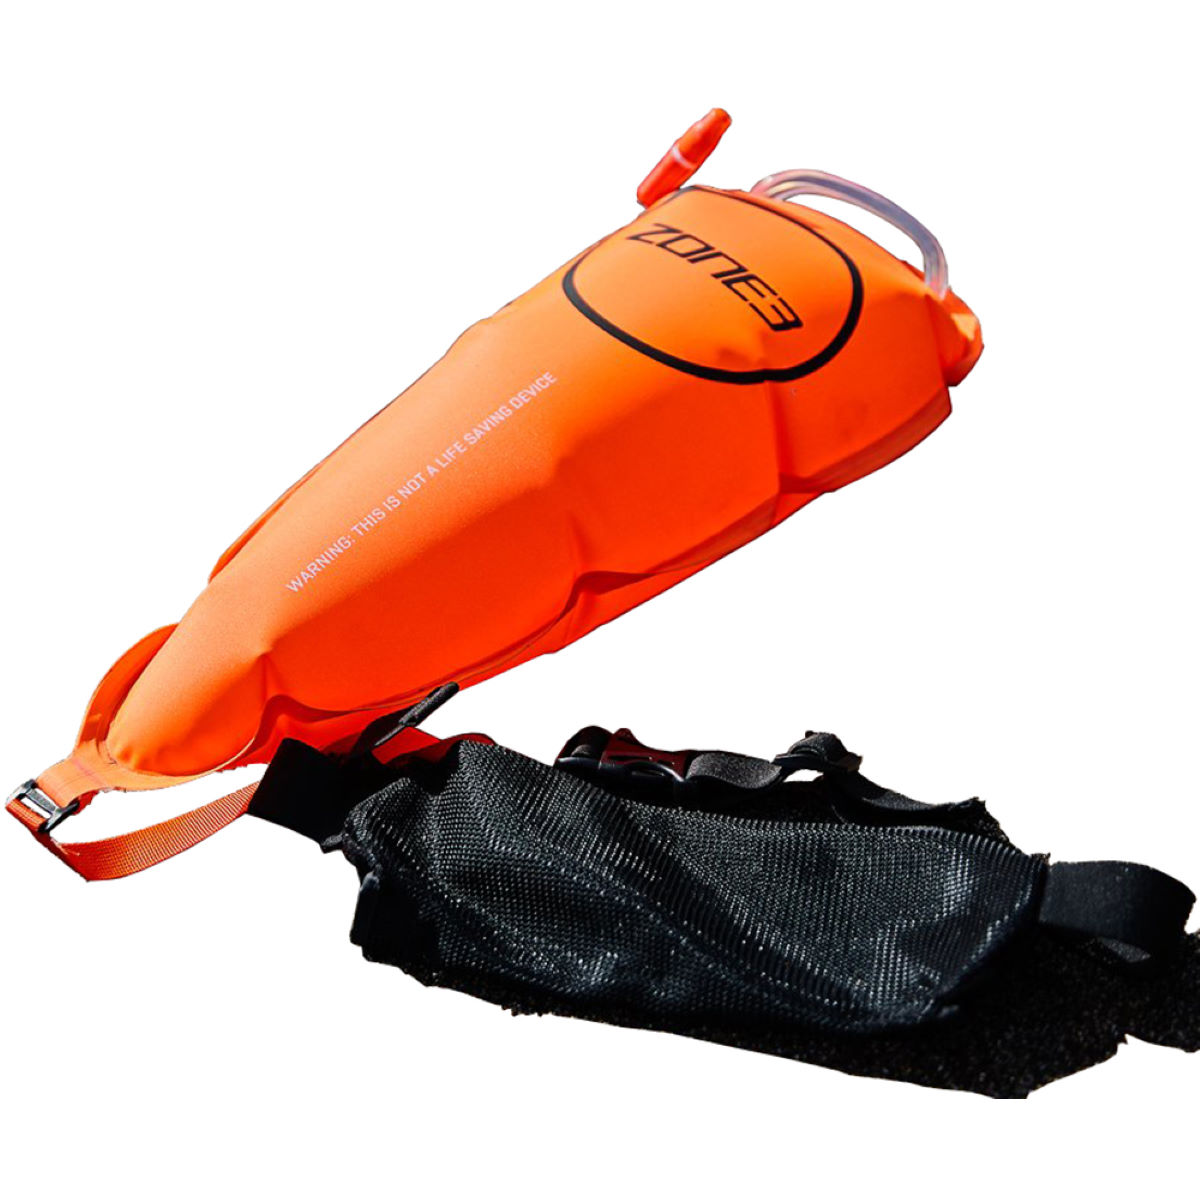 Cinturón de seguridad para nadar Zone3 (con bolsa de flotador para remolcar) - Flotadores